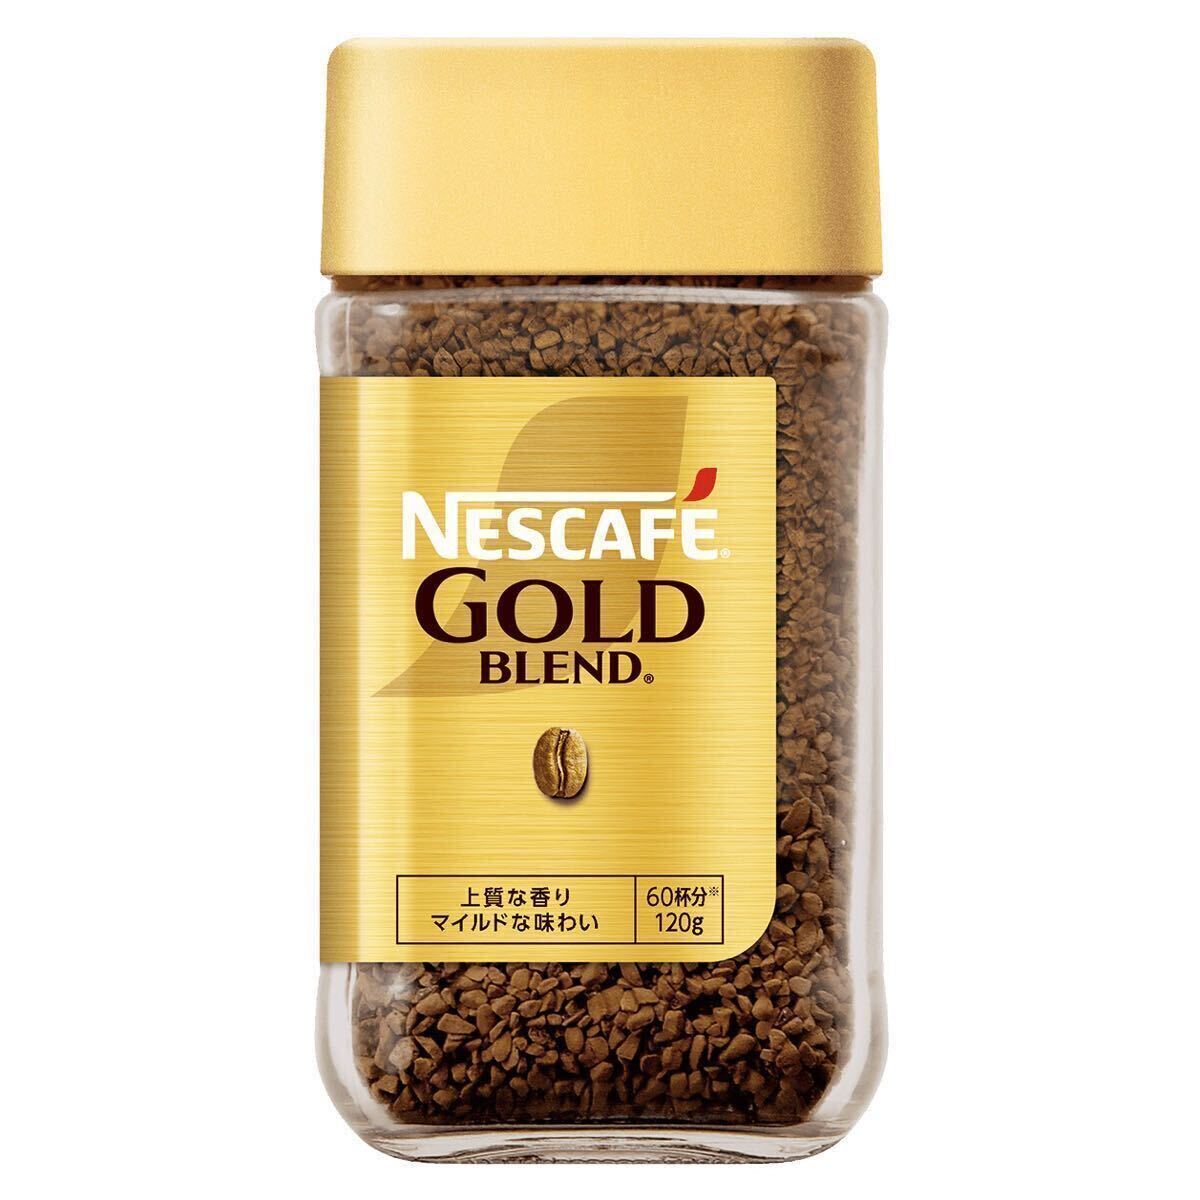 ネスレ ネスカフェ ゴールドブレンドコーヒー 瓶 120g 3本 (3個) マイルド レギュラーソリュブルコーヒー 珈琲 coffee 賞味期限2025年10月 